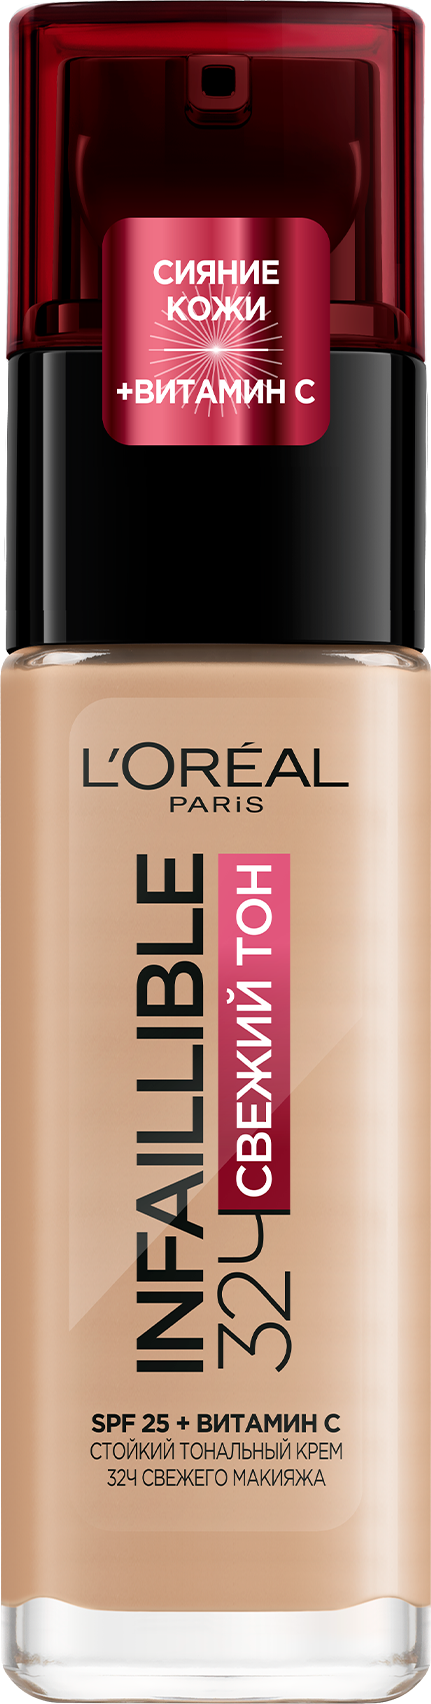 L'Oreal Paris Infaillible Тональный крем Свежий тон 32ч, тон 145 бежево-розовый